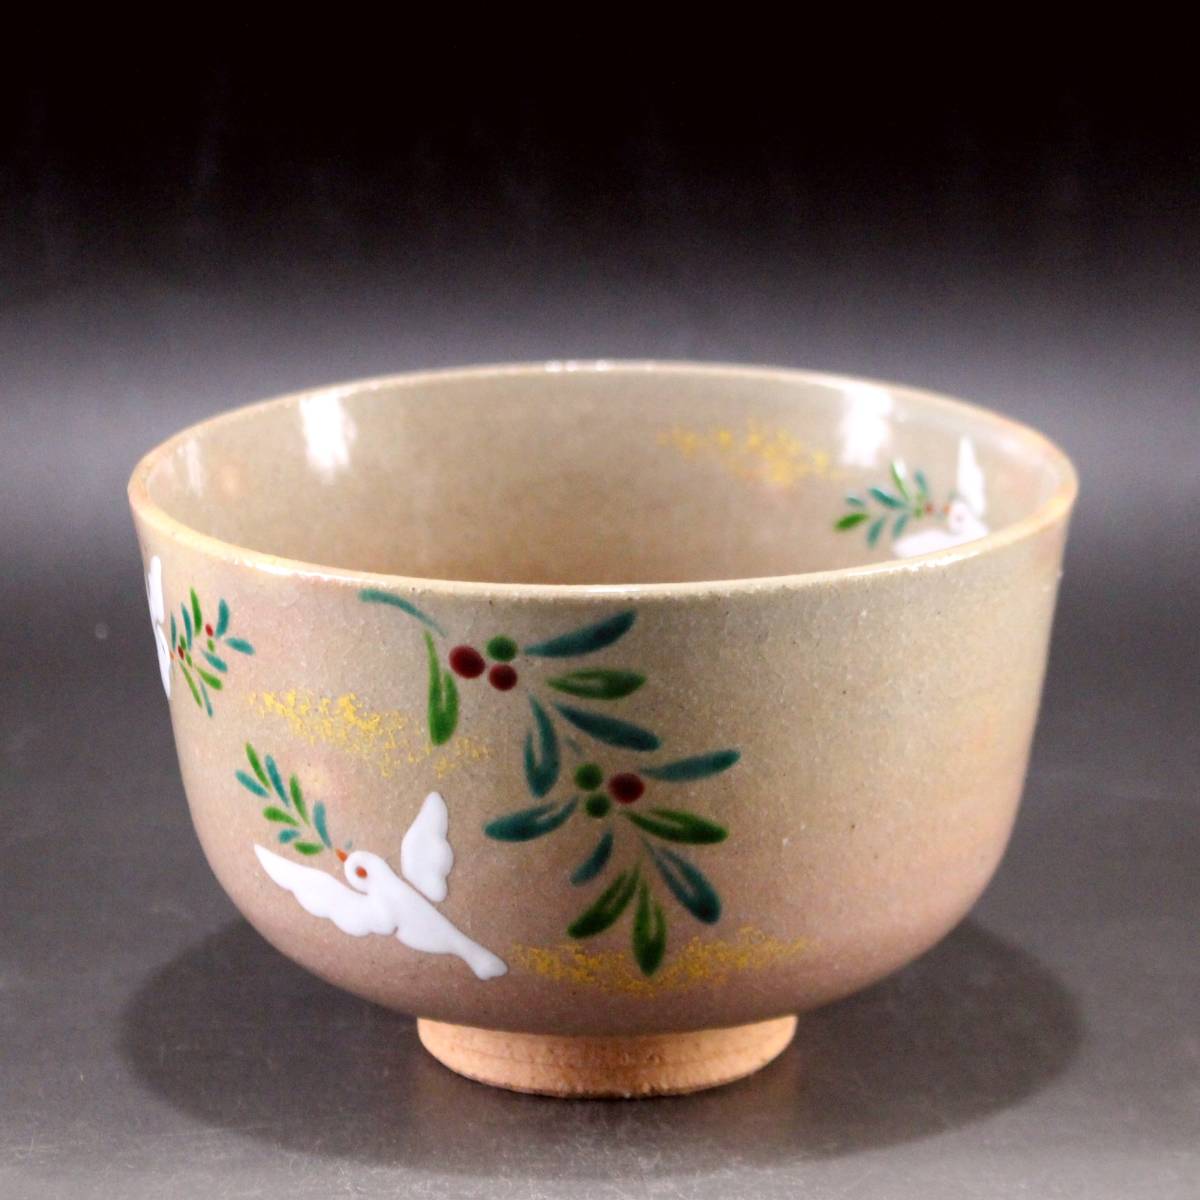 【小倉麗子】 鳩 オリーブ 茶碗 御題「和」 平和の象徴 化粧箱 茶道具 新品_画像2